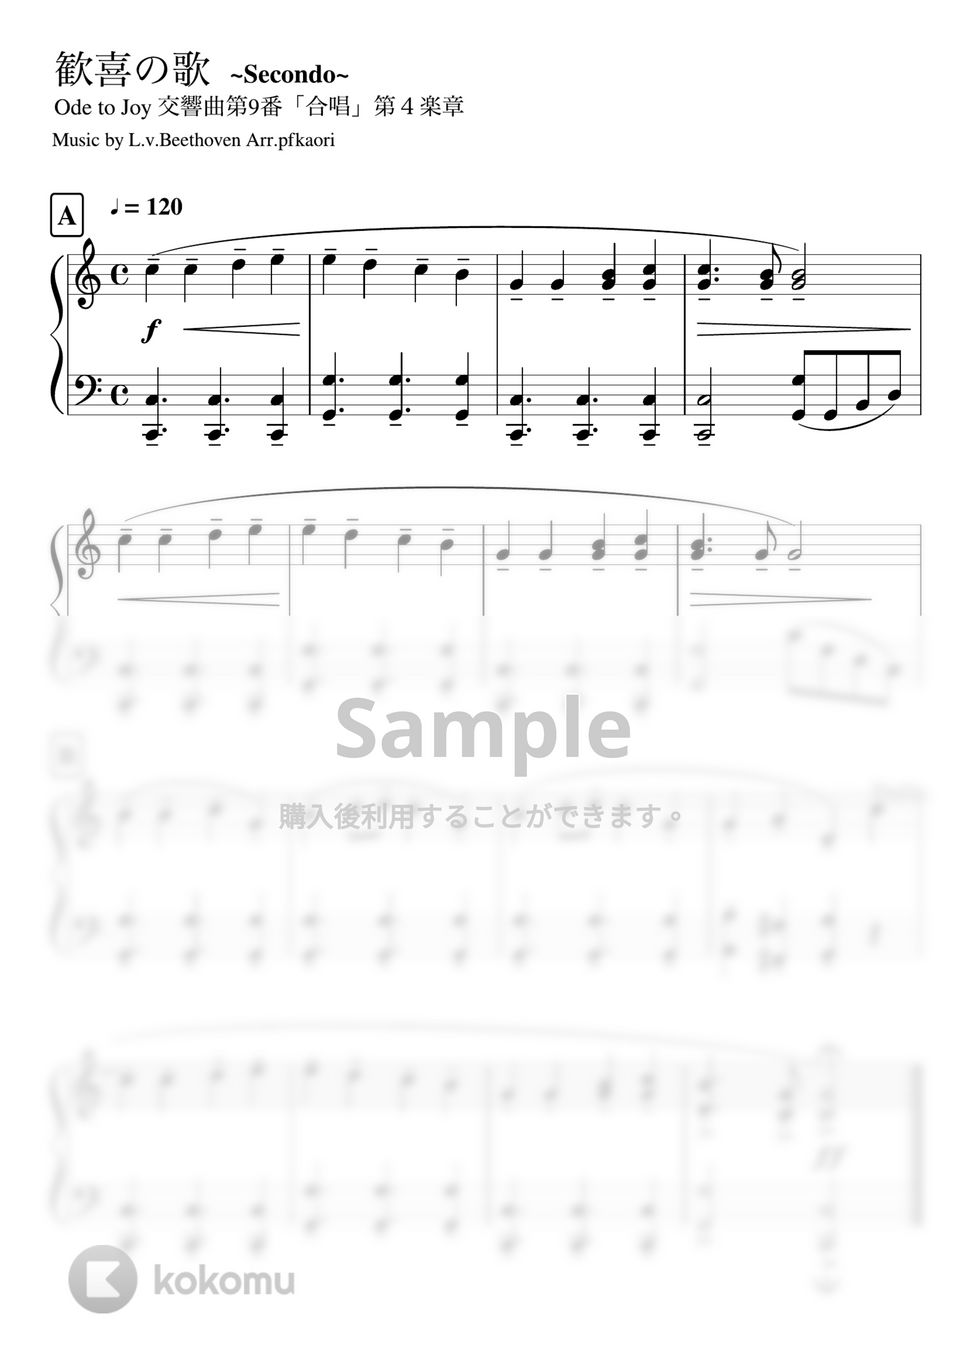 ベートーヴェン - 歓喜の歌 (Cdur ピアノ連弾・セカンド中級プリモ初級) by pfkaori